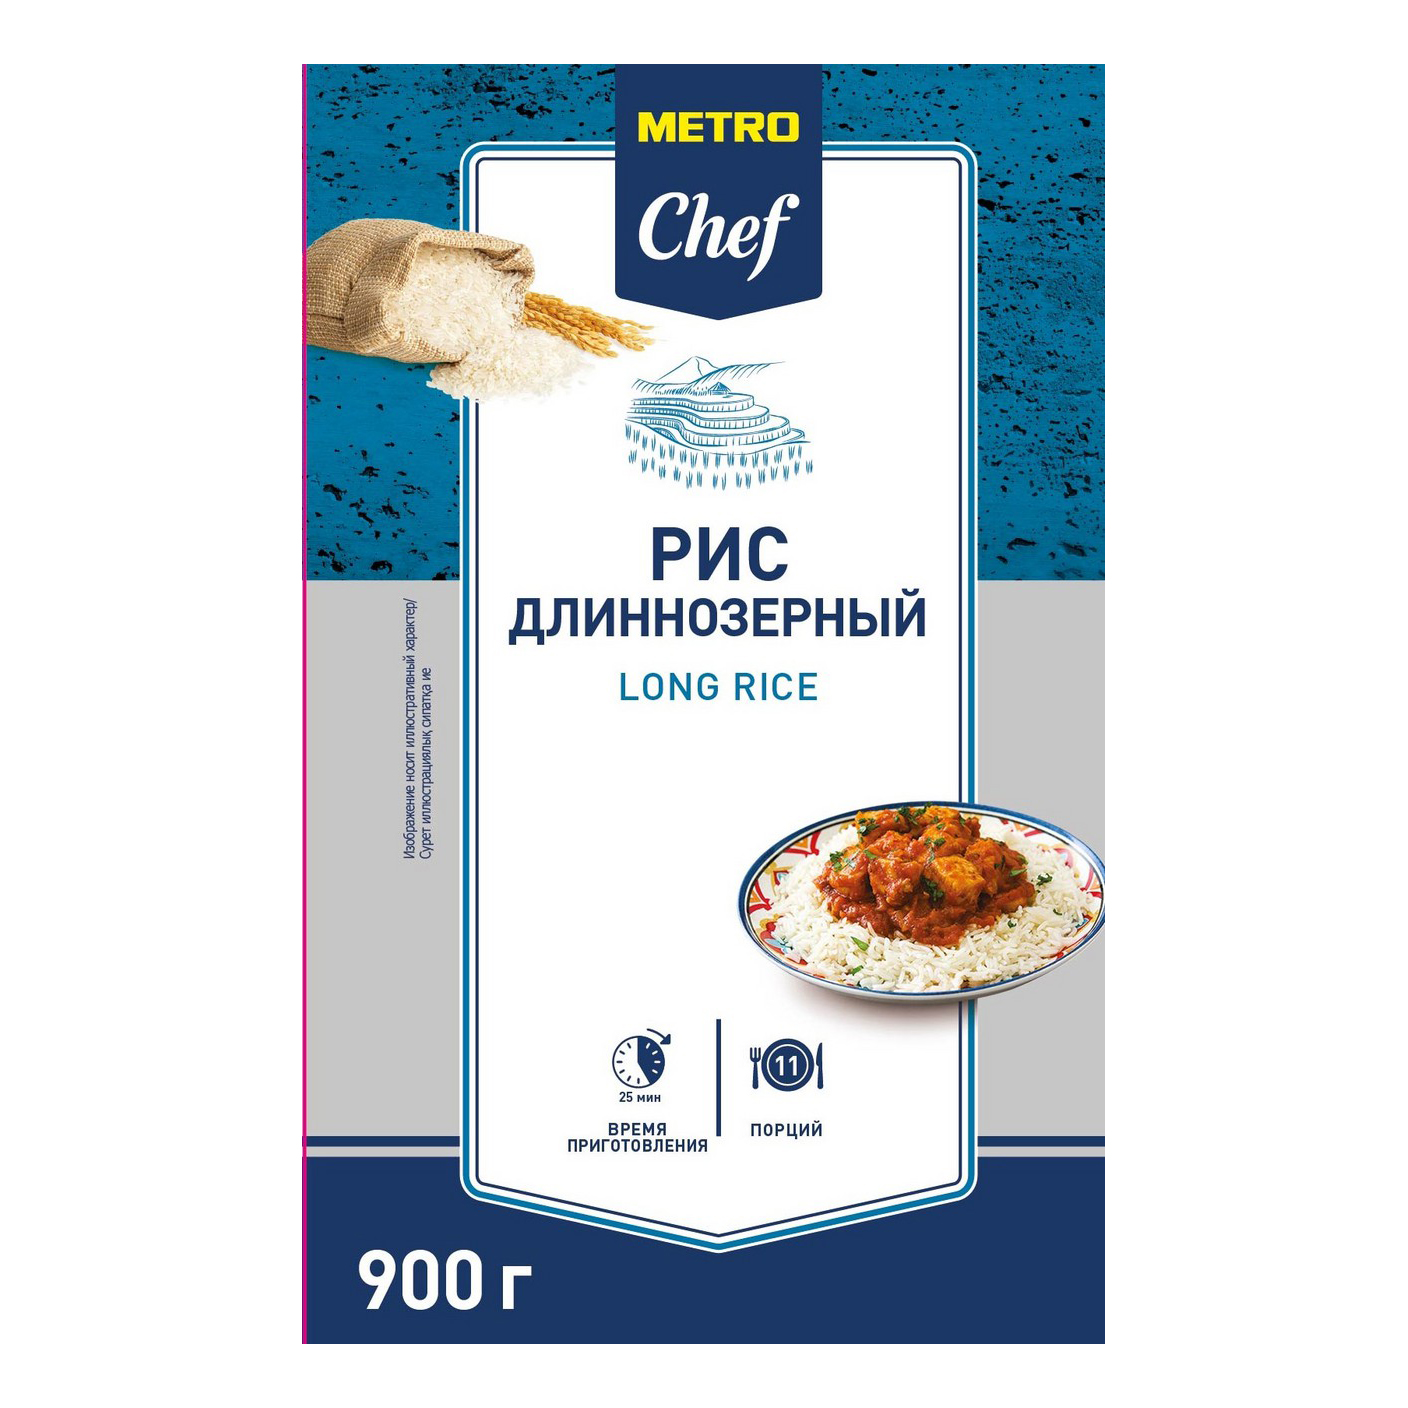 Рис Metro Chef длиннозерный 900 г